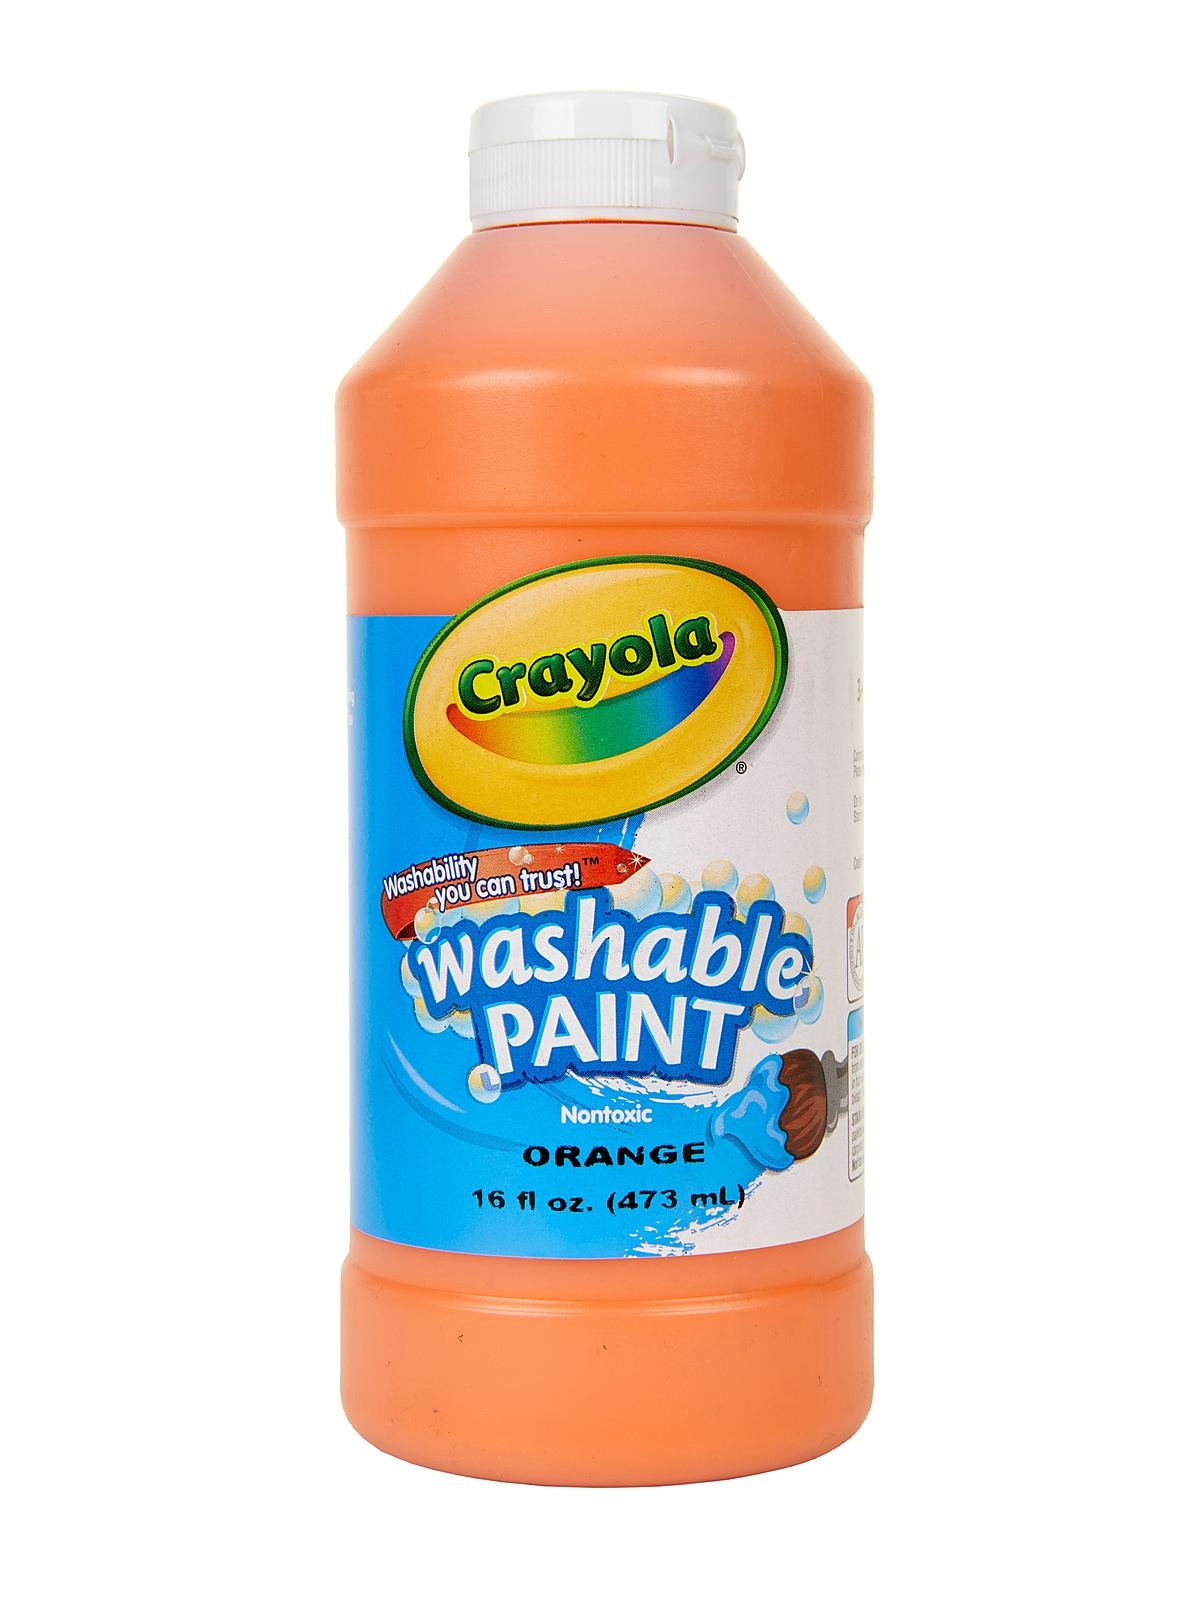 Crayola Washable Paint